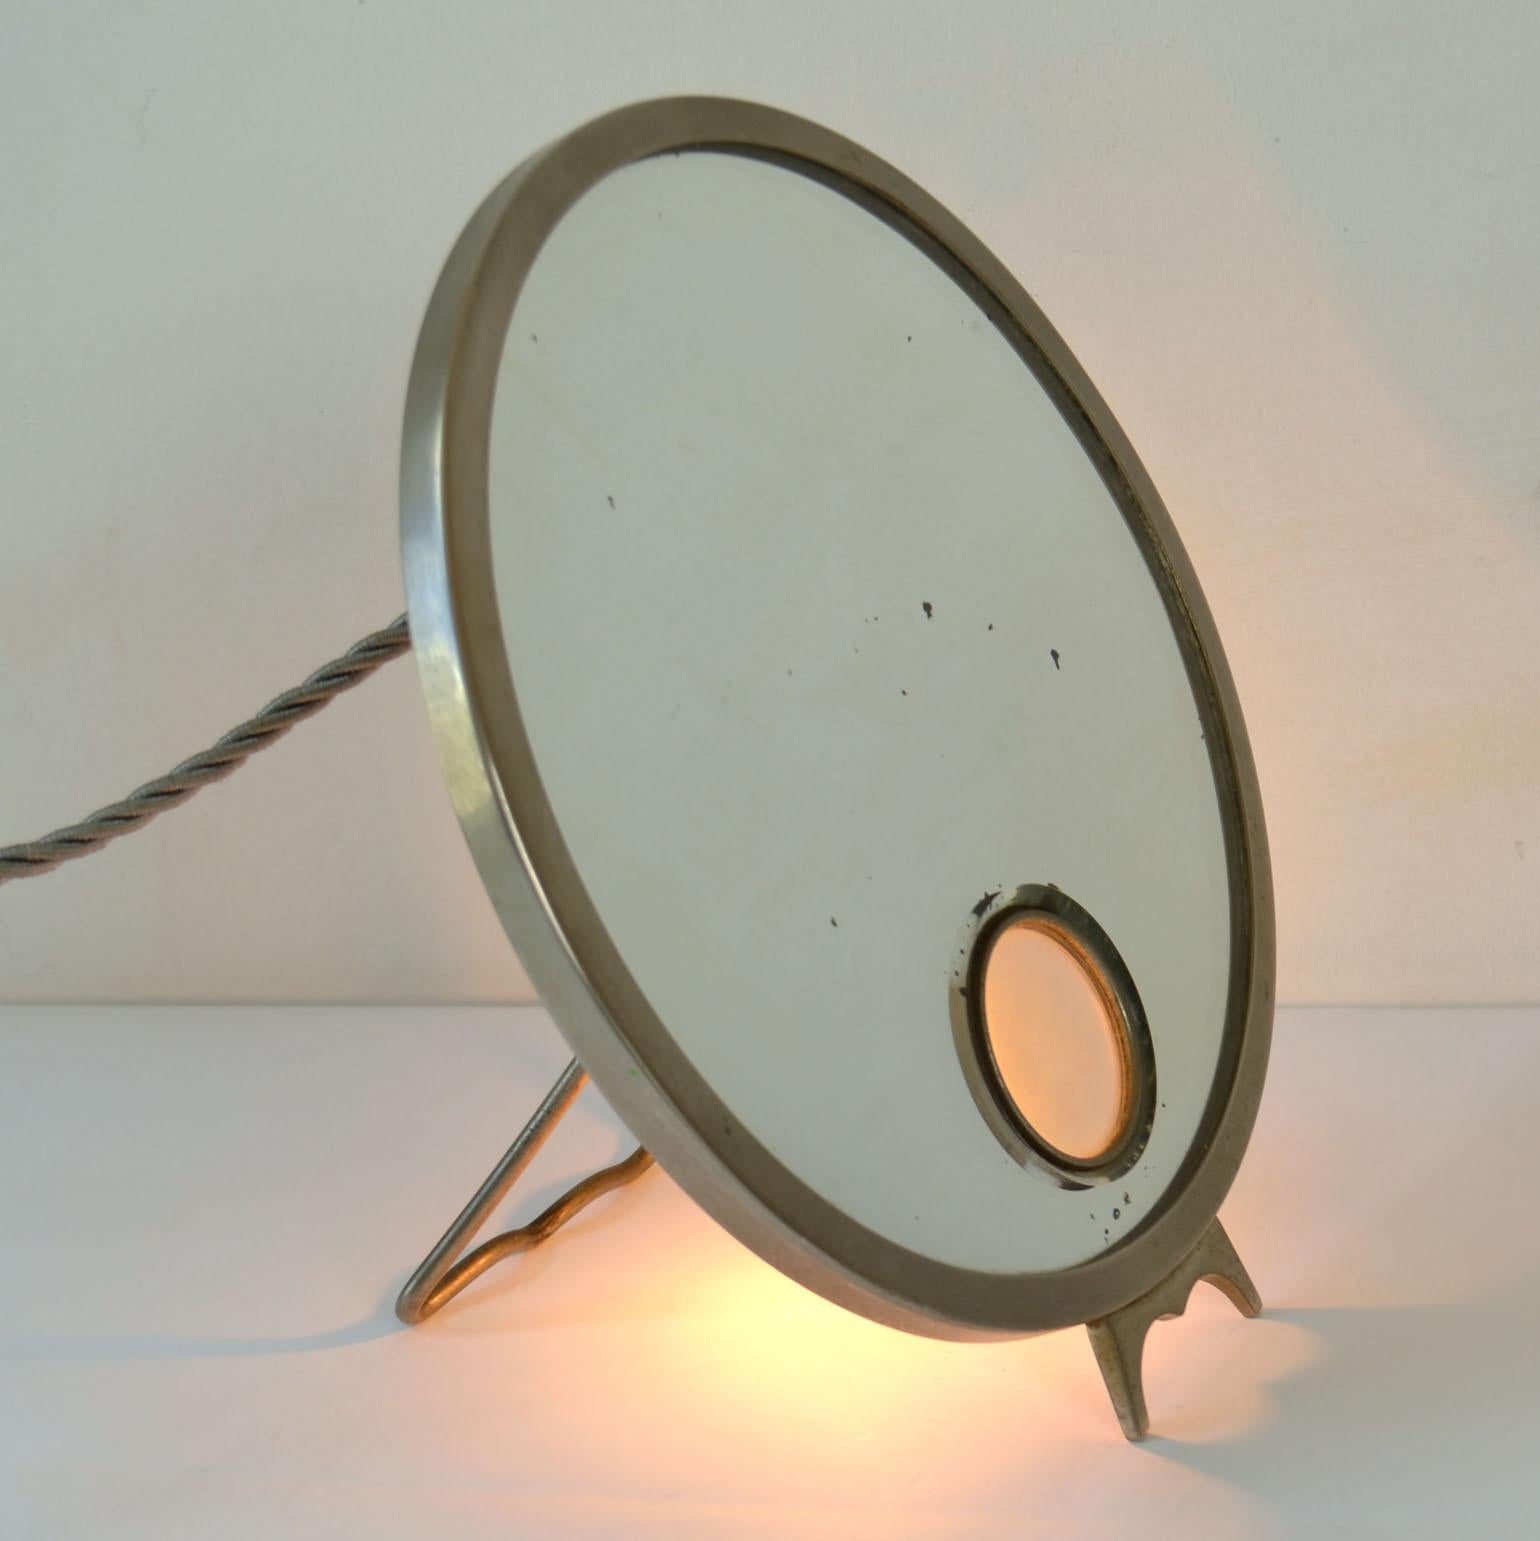 Le miroir de table réglable Brot Mirophar, avec cadre nickelé et verre éclairé, a été créé en 1927. L'innovation du Brot était le concept d'un miroir grossissant éclairé avec un verre opalin. Ils ont été conçus pour éviter la formation de buée en